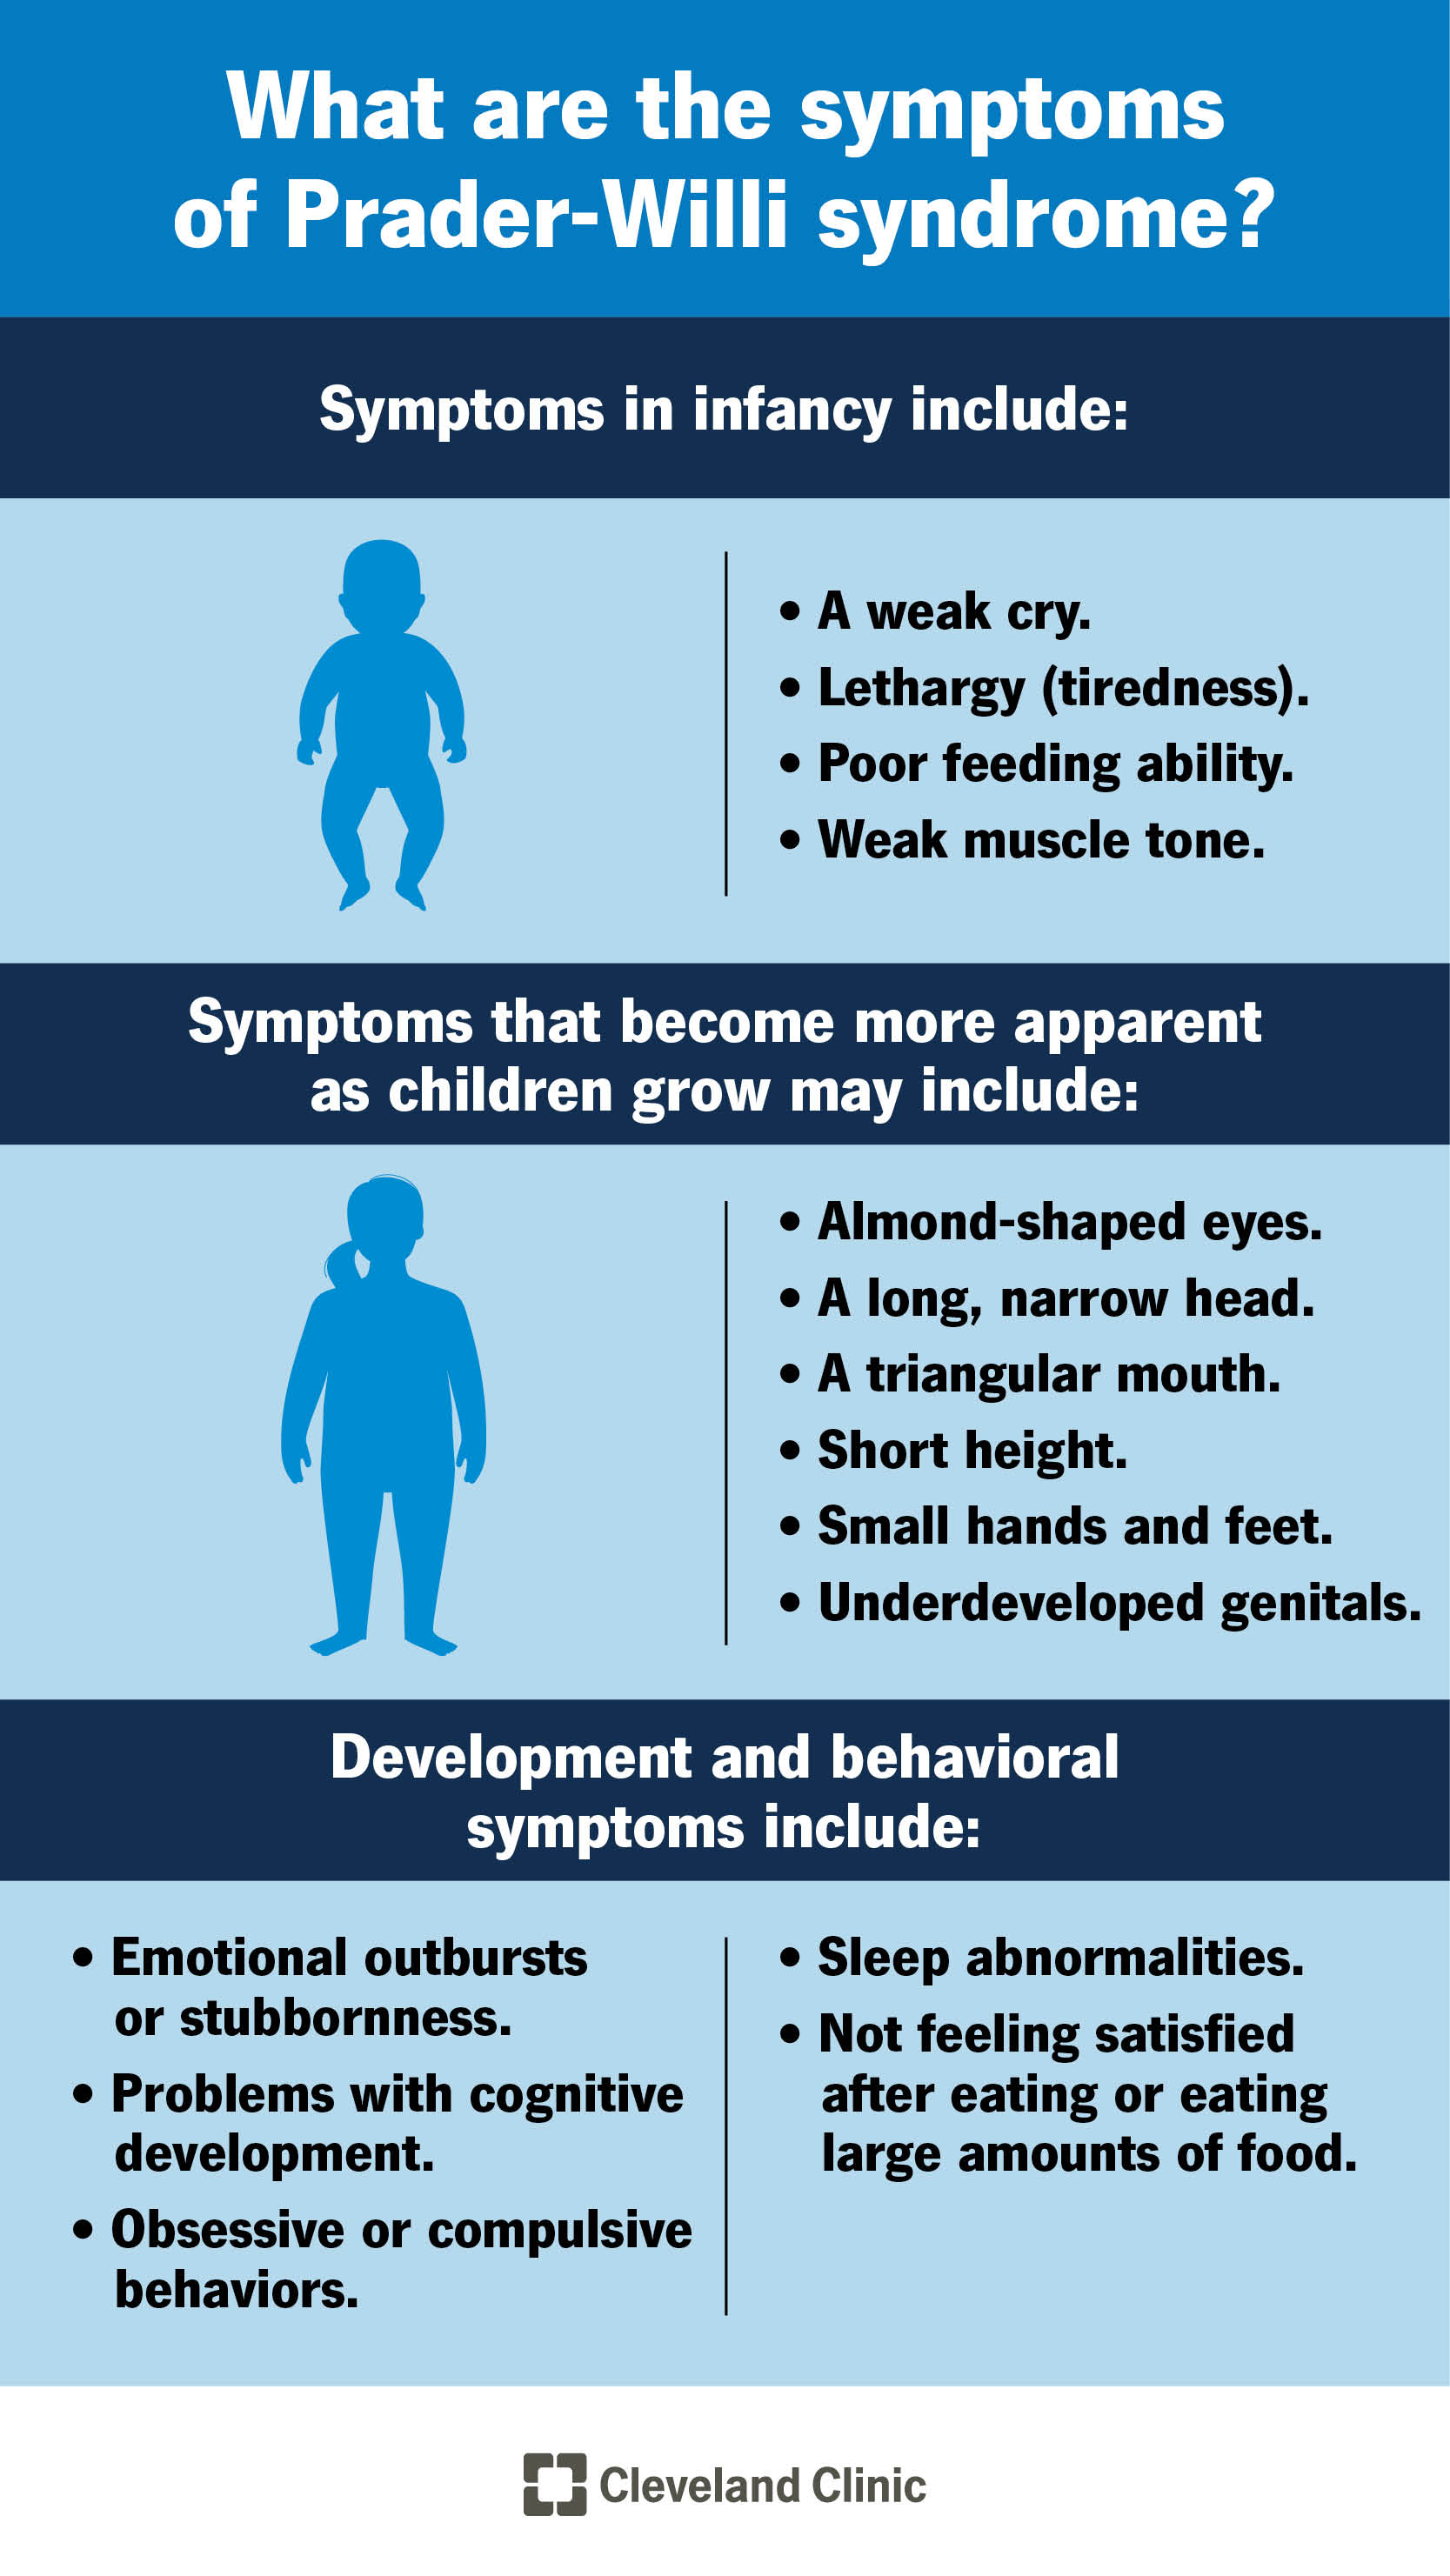 I sintomi della sindrome di Prader-Willi variano in base all’età.